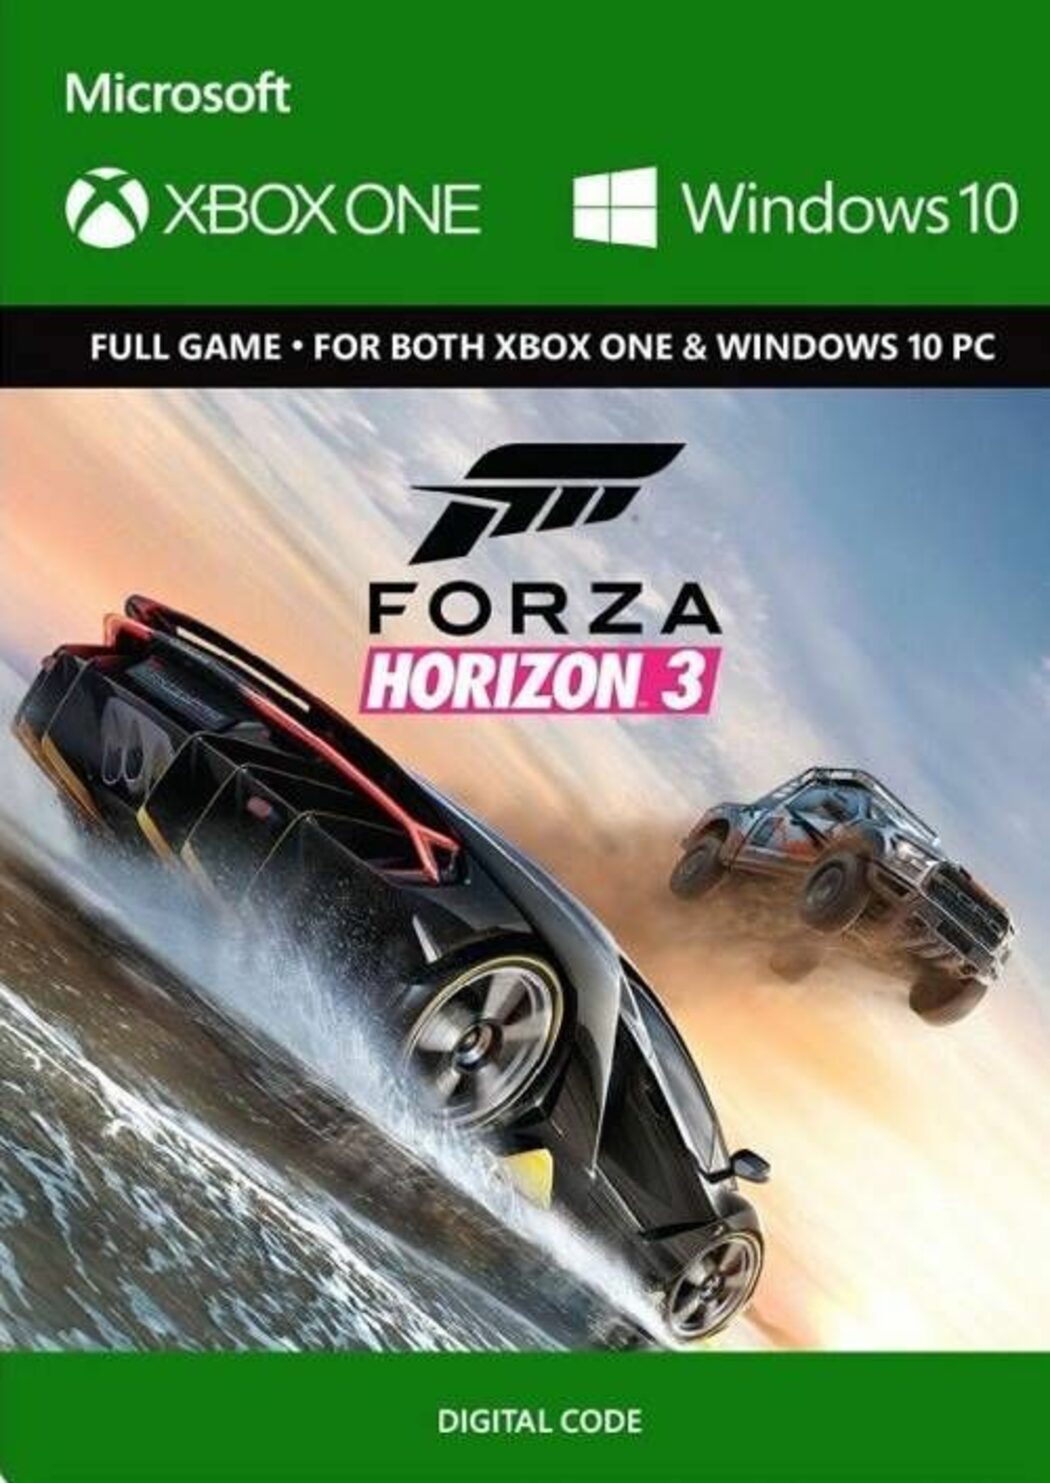 Comprar Forza Horizon 4 CD Chave para PC Barato